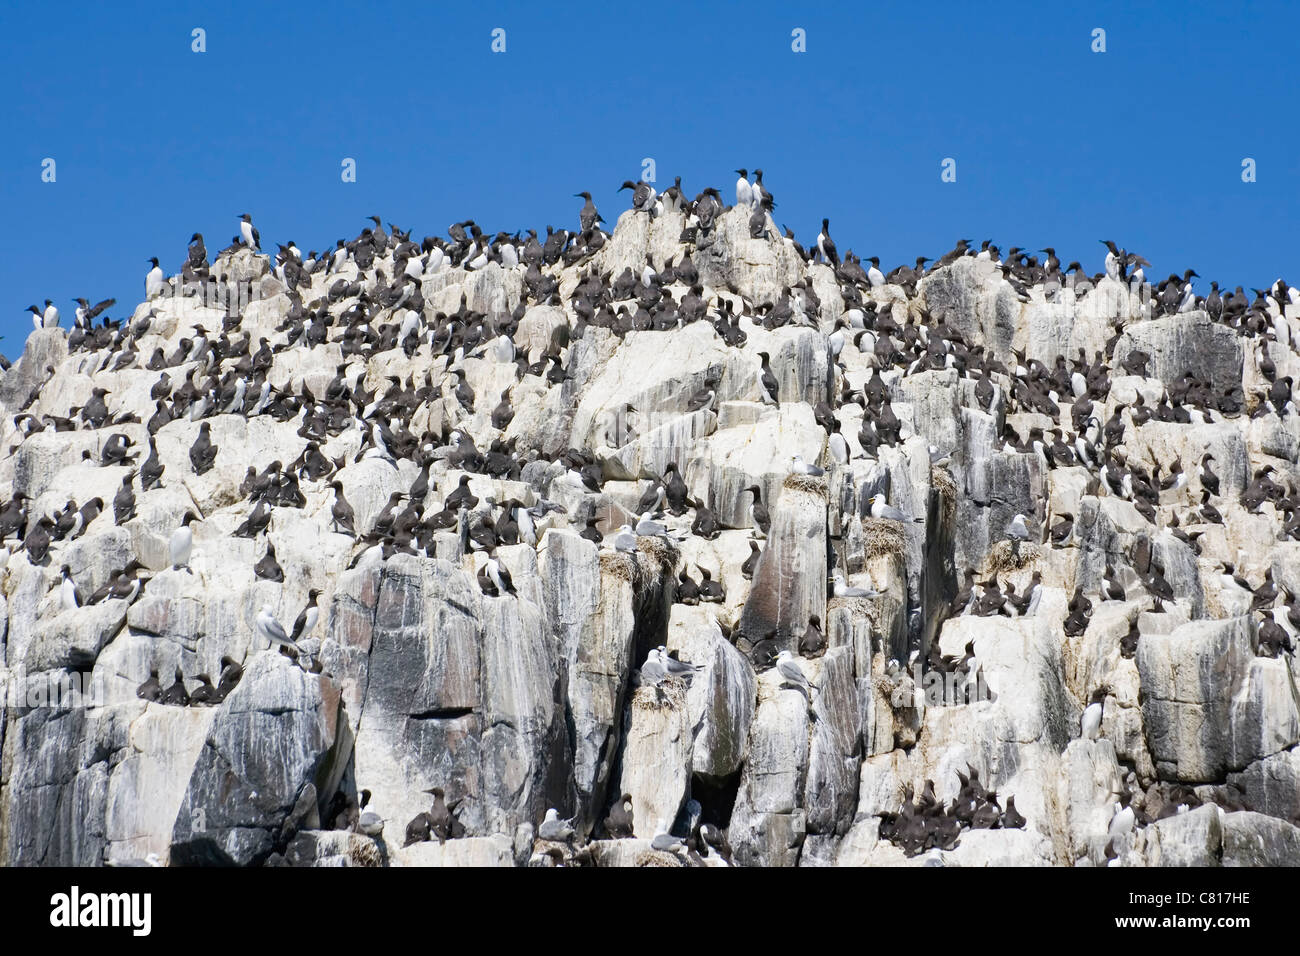 La colonia de pájaros bobos Murres comunes o comunes en las Islas Farne, costa de Northumberland, Inglaterra. Foto de stock